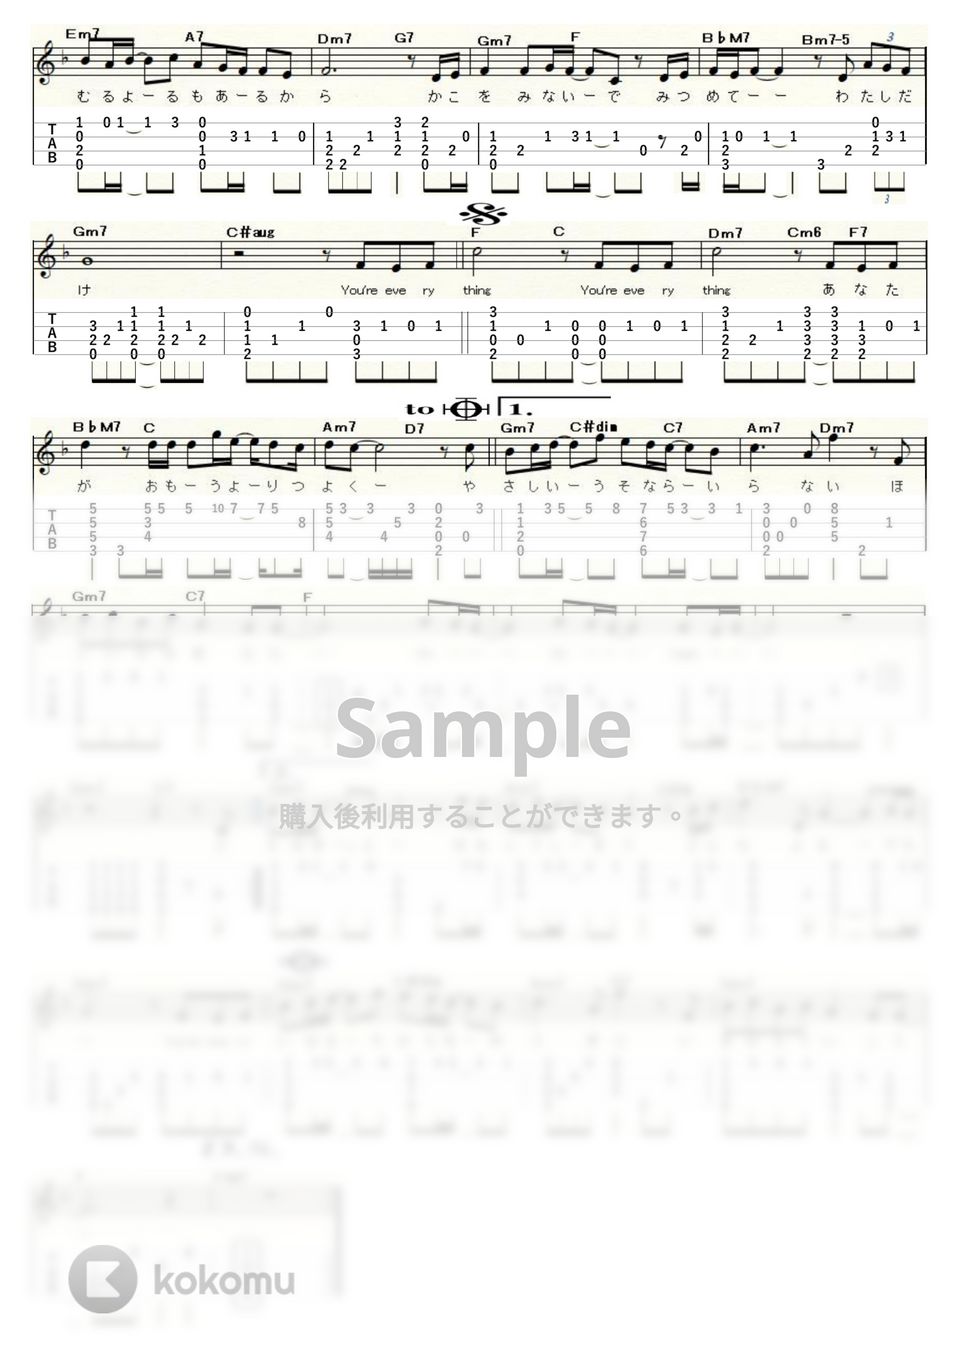 MISIA - EVERYTHING (Low-G) by ukulelepapa